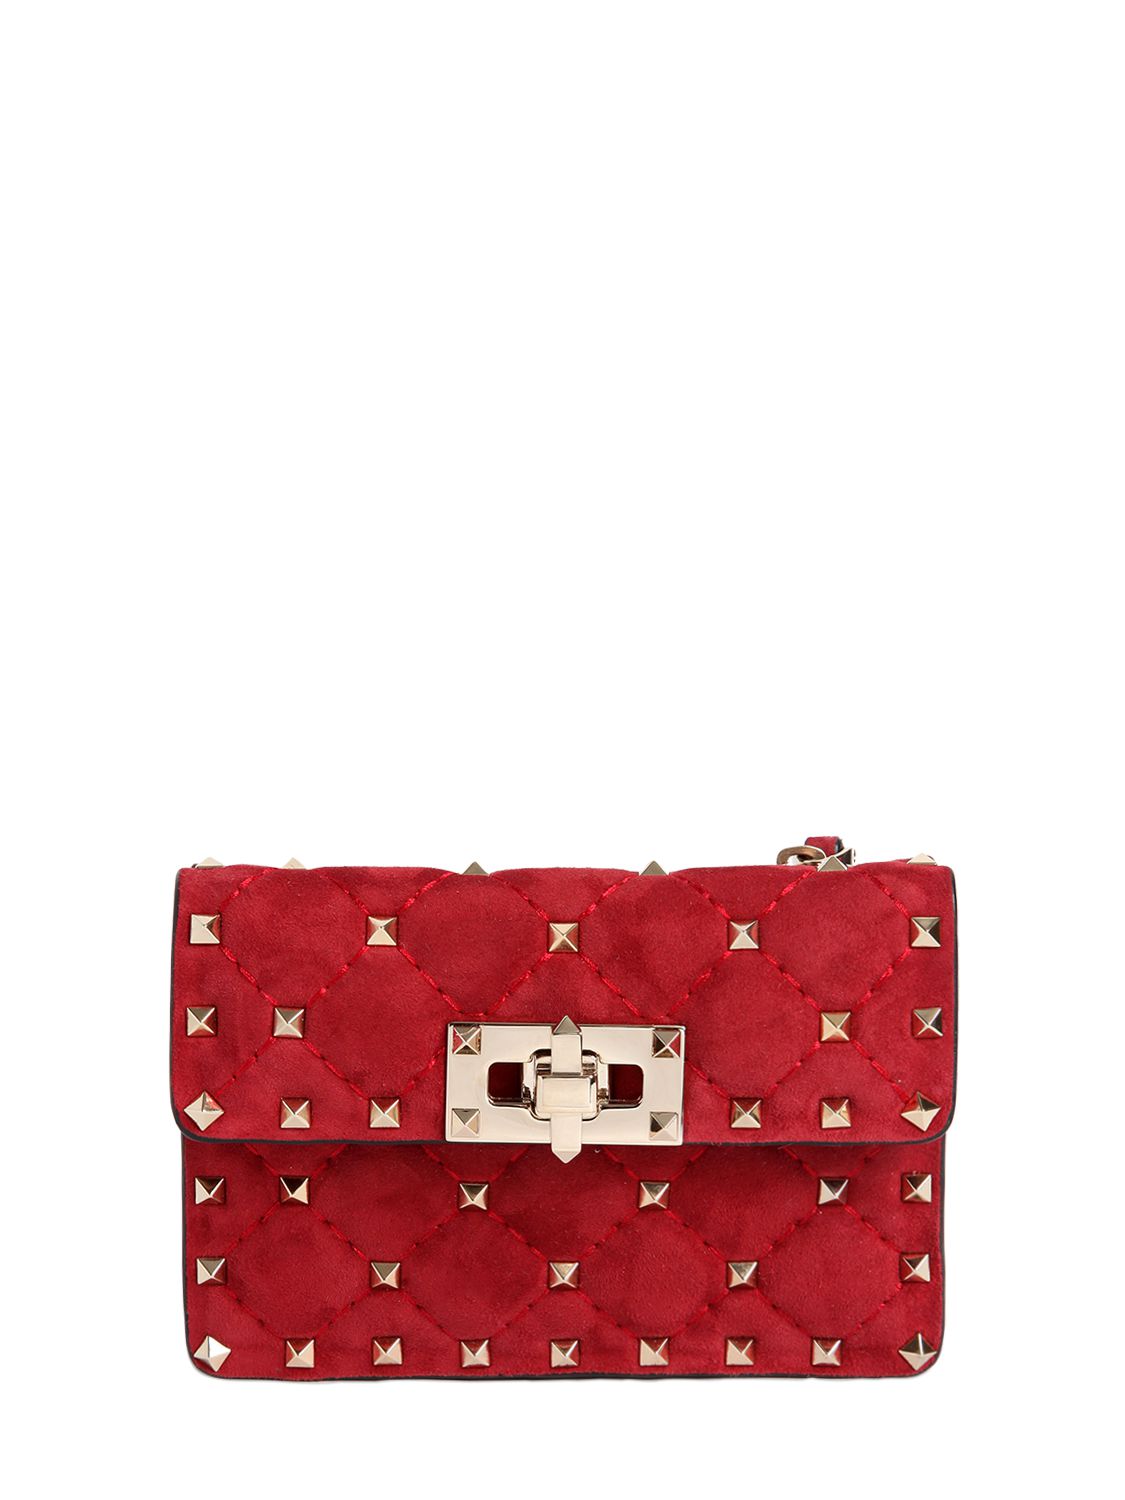 Valentino borsa mini in pelle trapuntata con borchie rosso scuro donna borse,valentino scarpe,valentino Borse,saldi on line